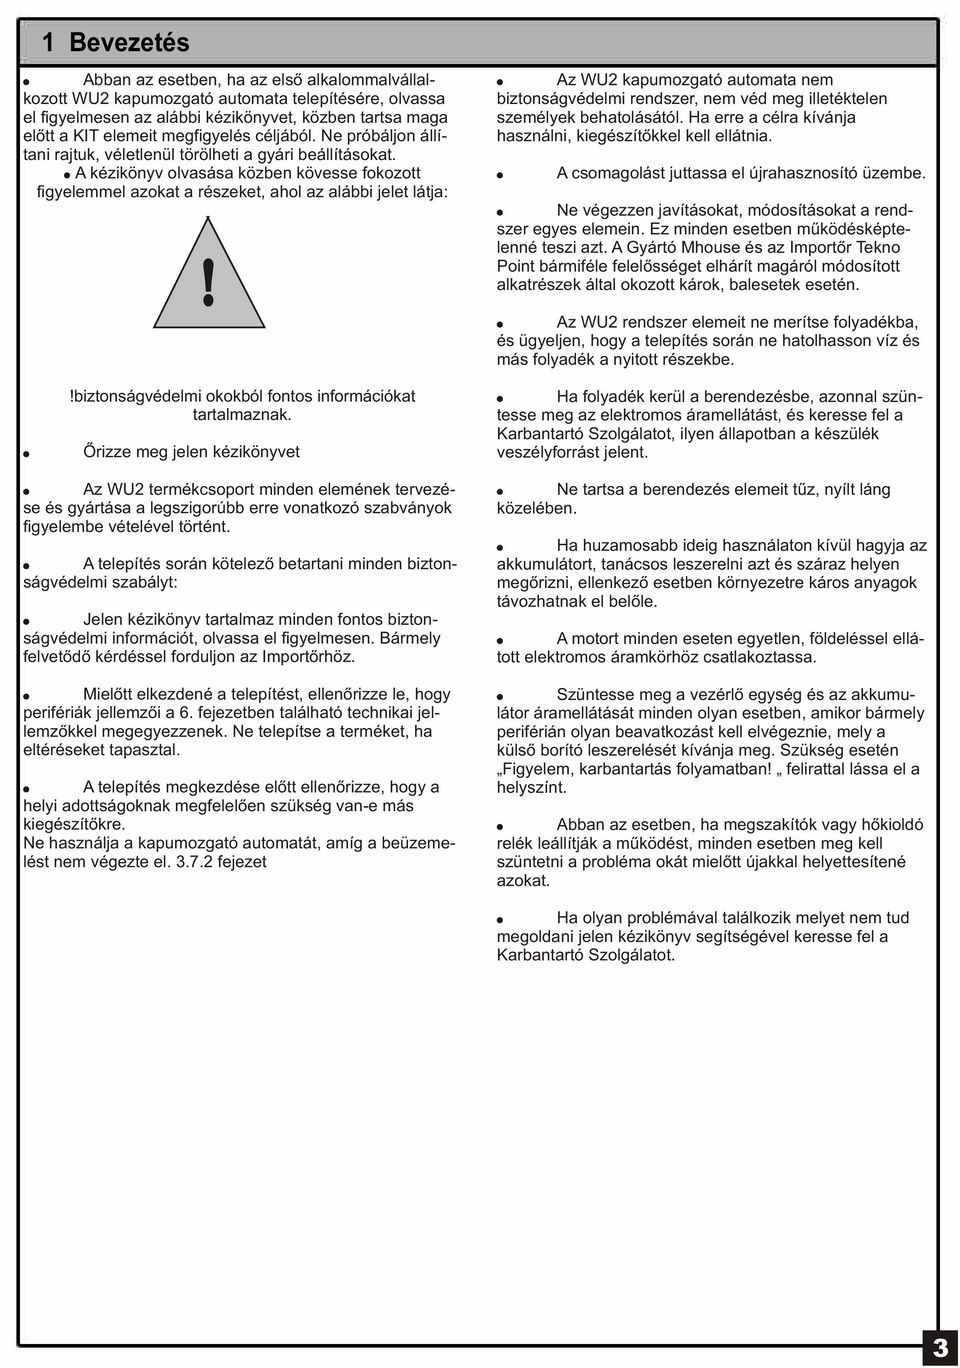 Használati és telepítési útmutató - PDF Ingyenes letöltés